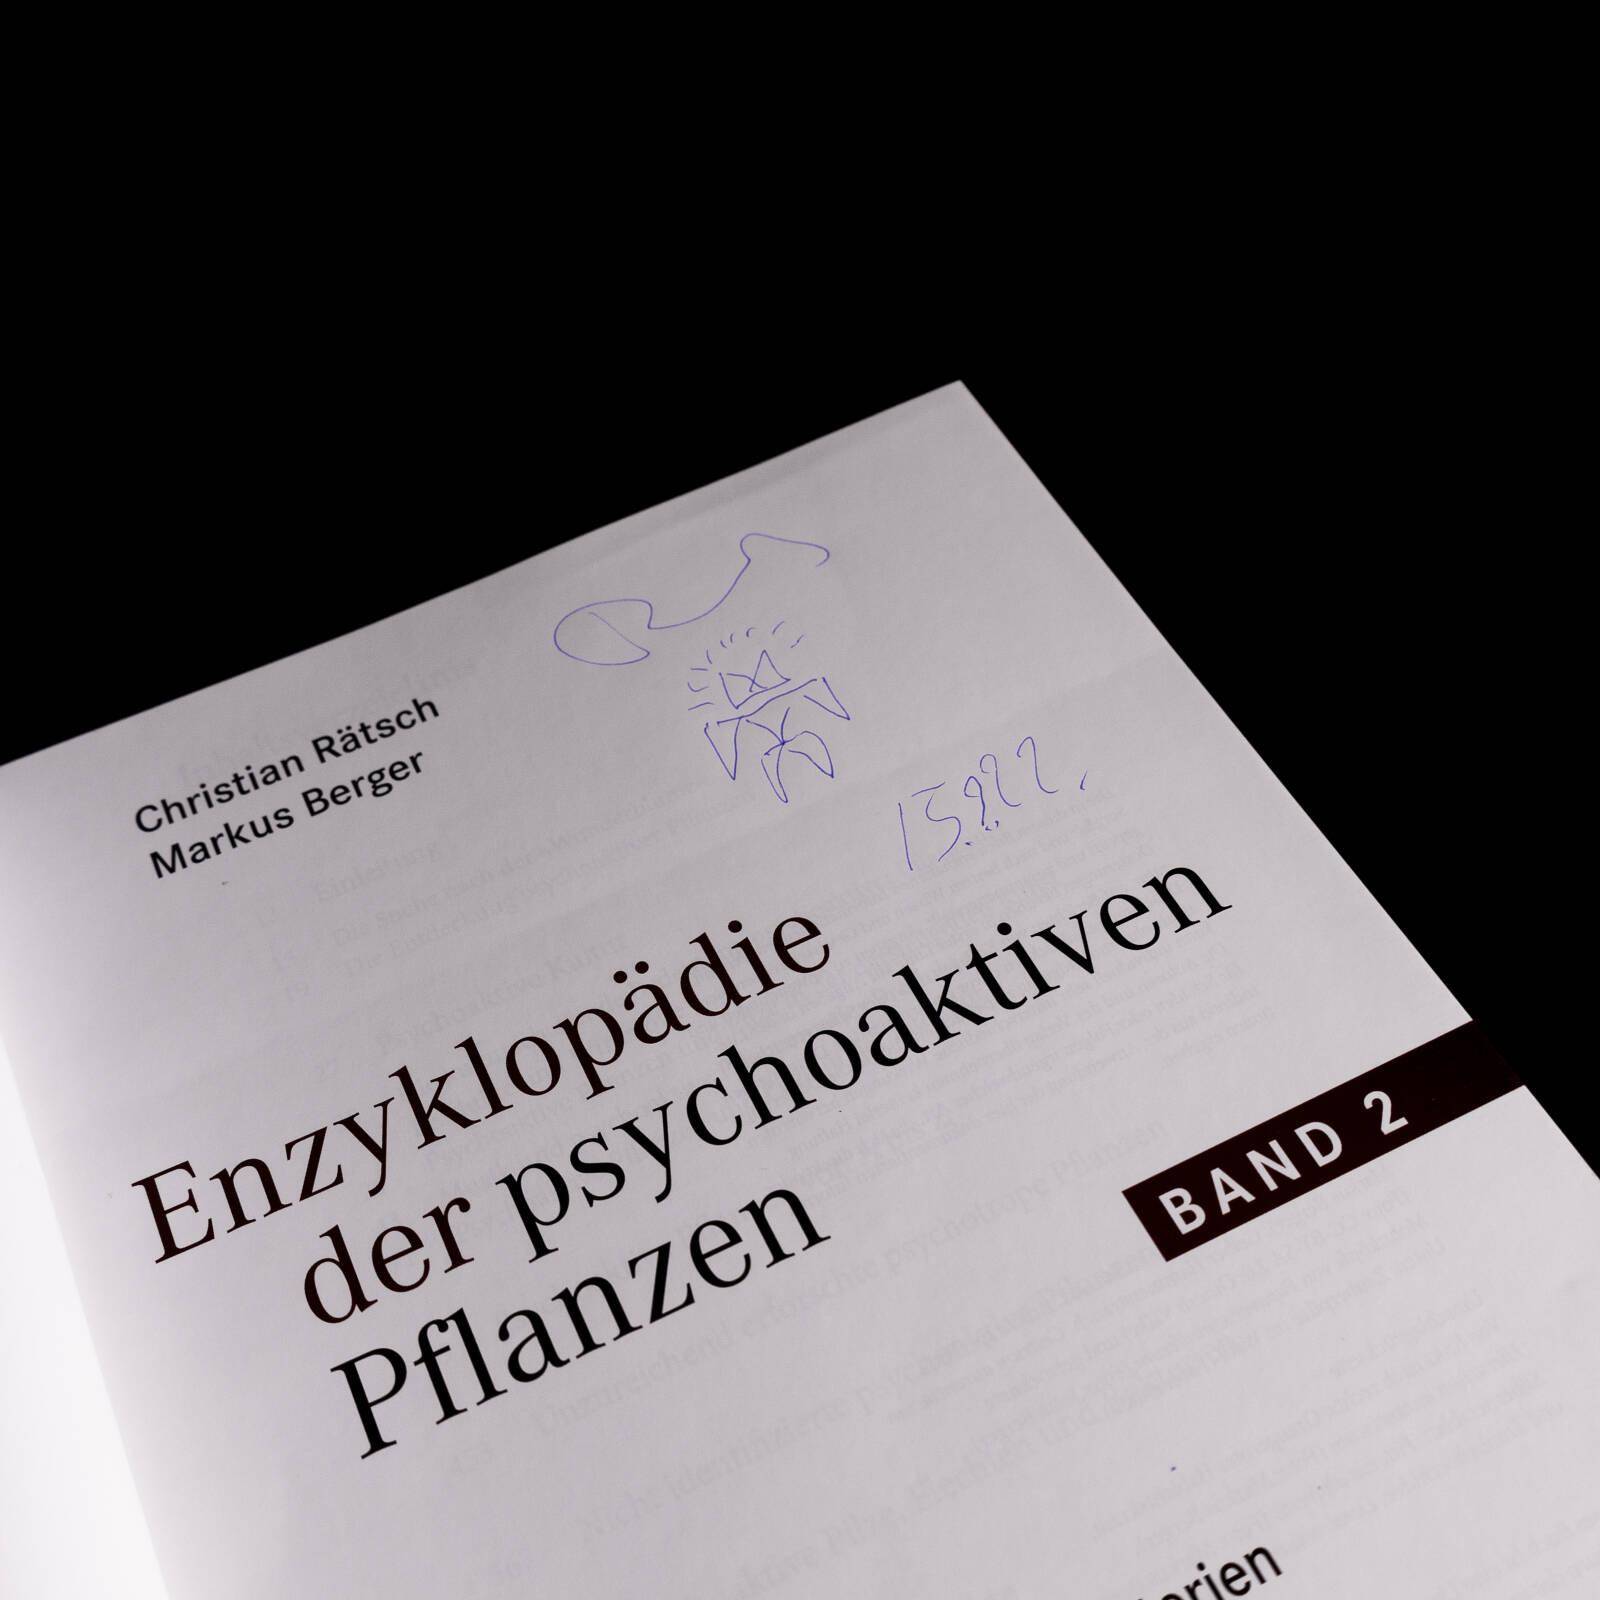 Enzyklopädie der psychoaktiven Pflanzen - Band 2 | Ch. Rätsch, M. Berger